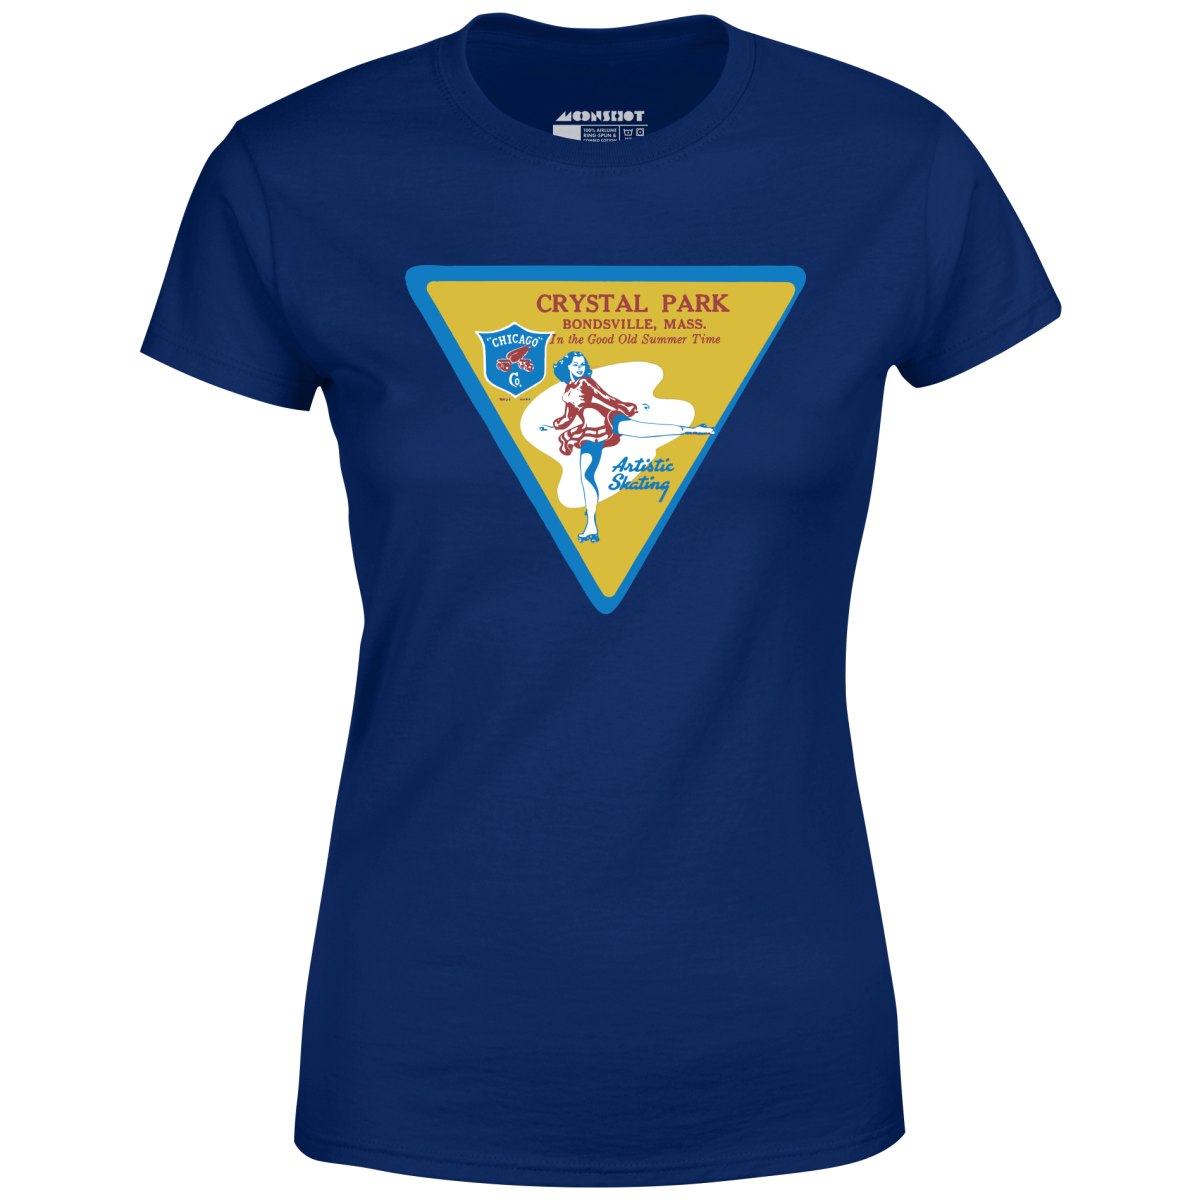 Crystal Park - Bondsville, MA - Vintage Roller Rink - Women's T-Shirt